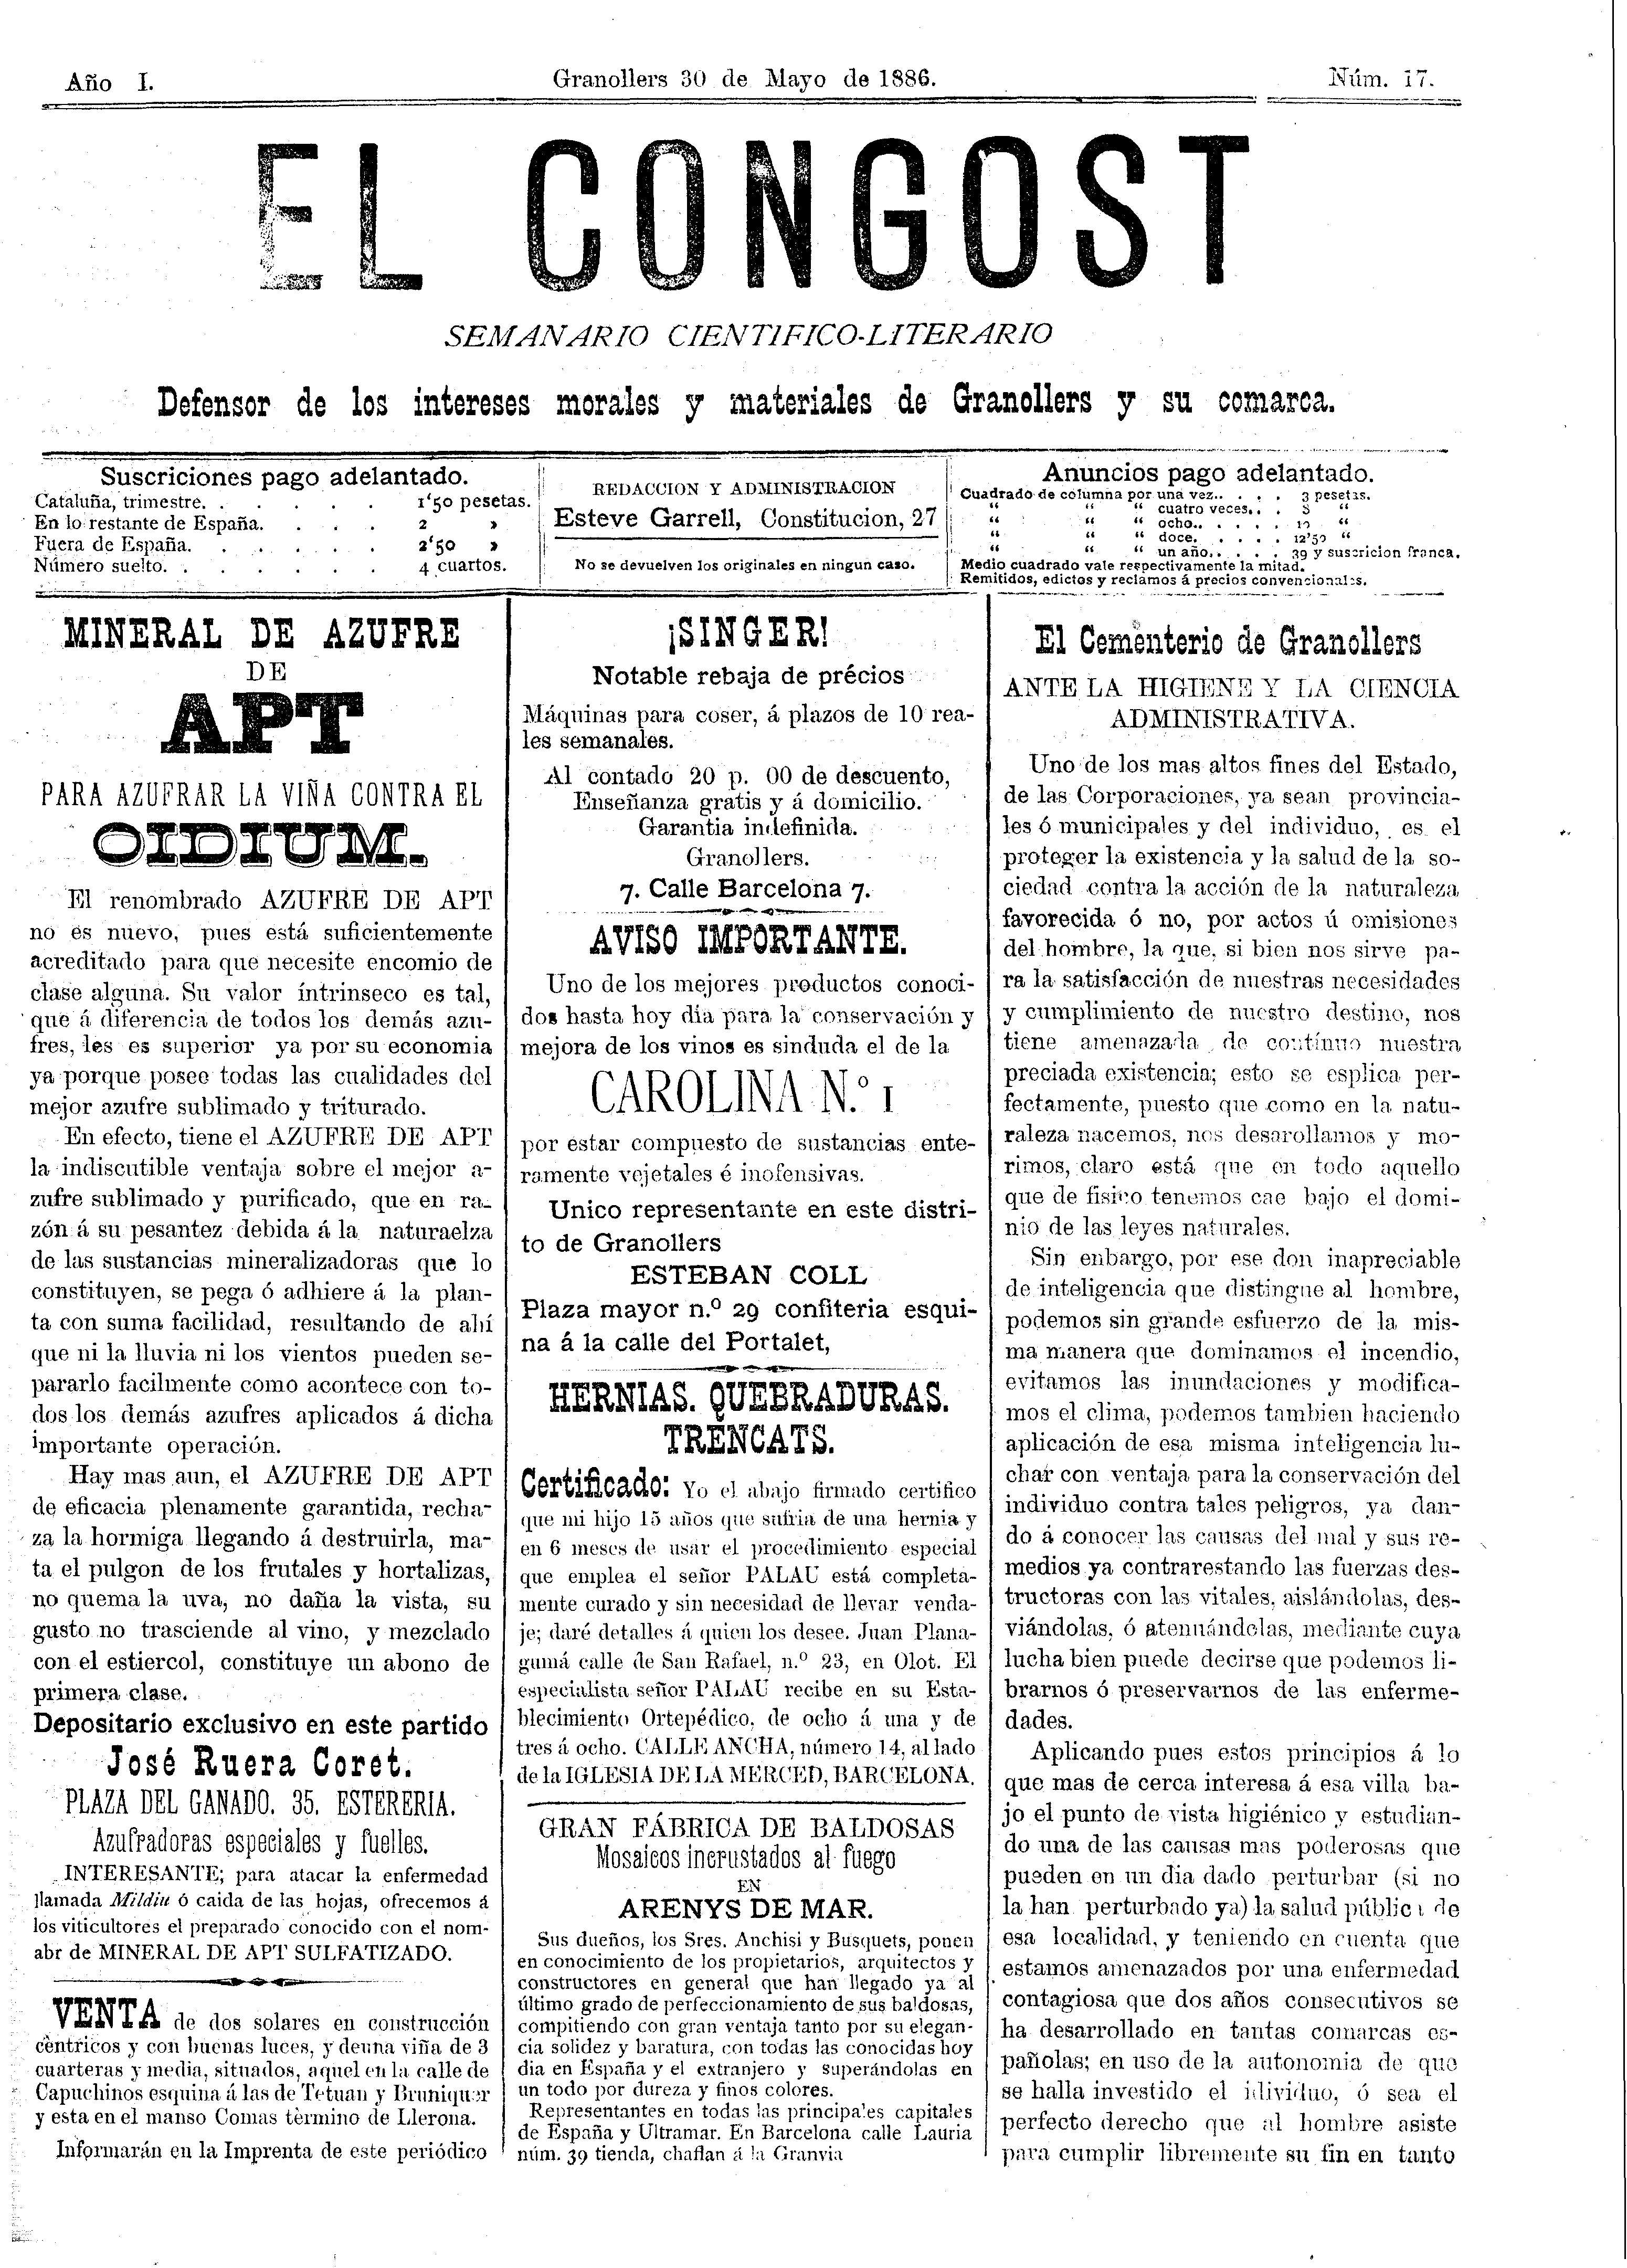 El Congost, 30/5/1886 [Issue]